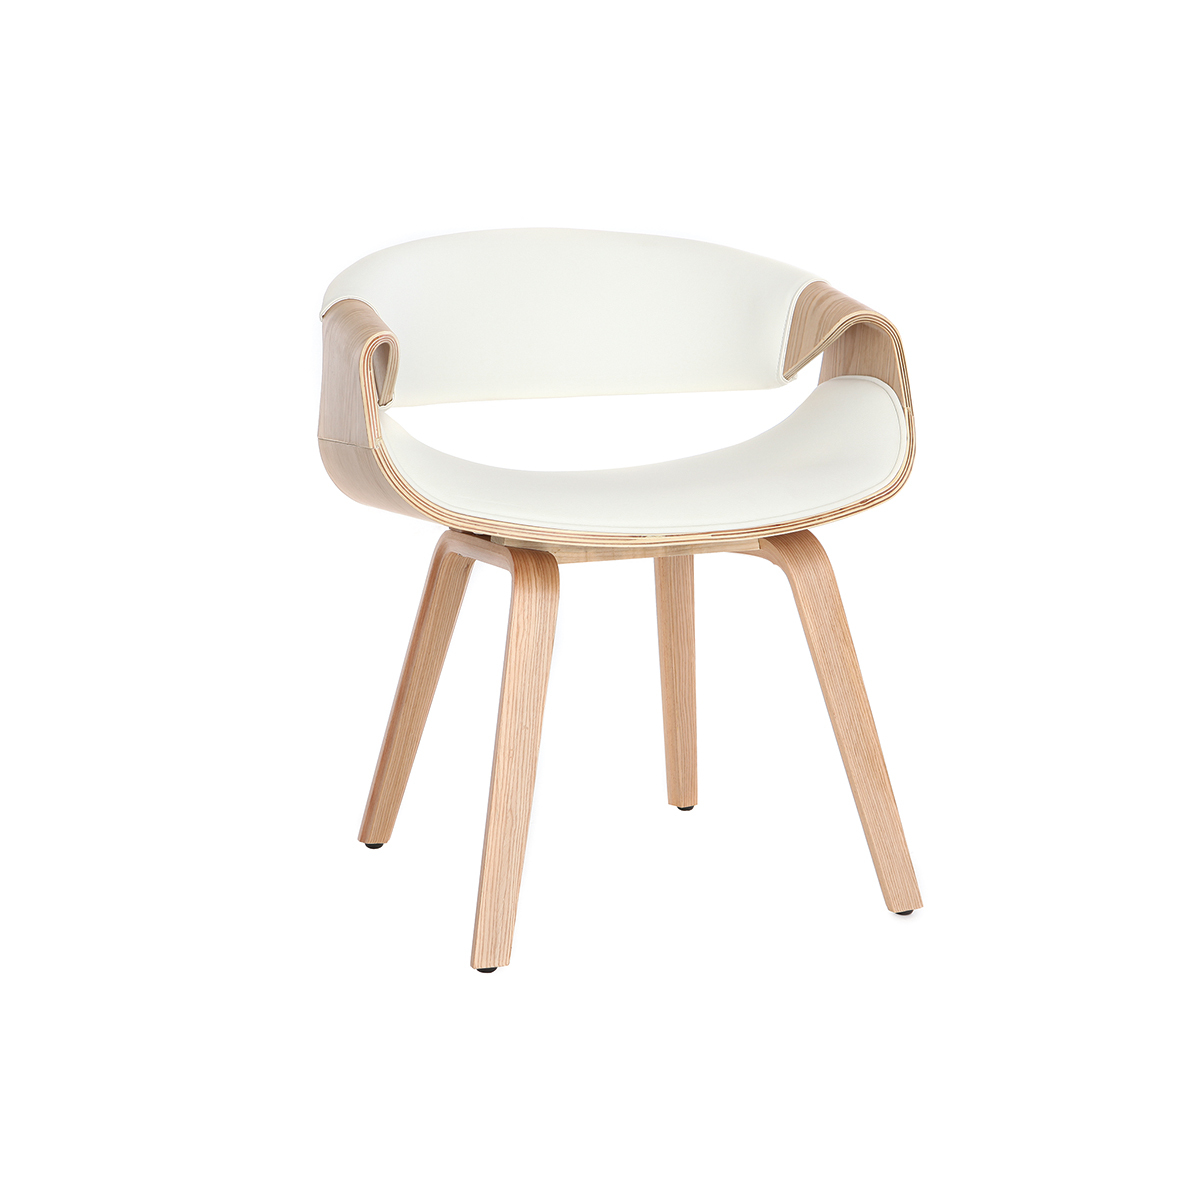 Chaise design scandinave blanc et bois clair ARAMIS vue1